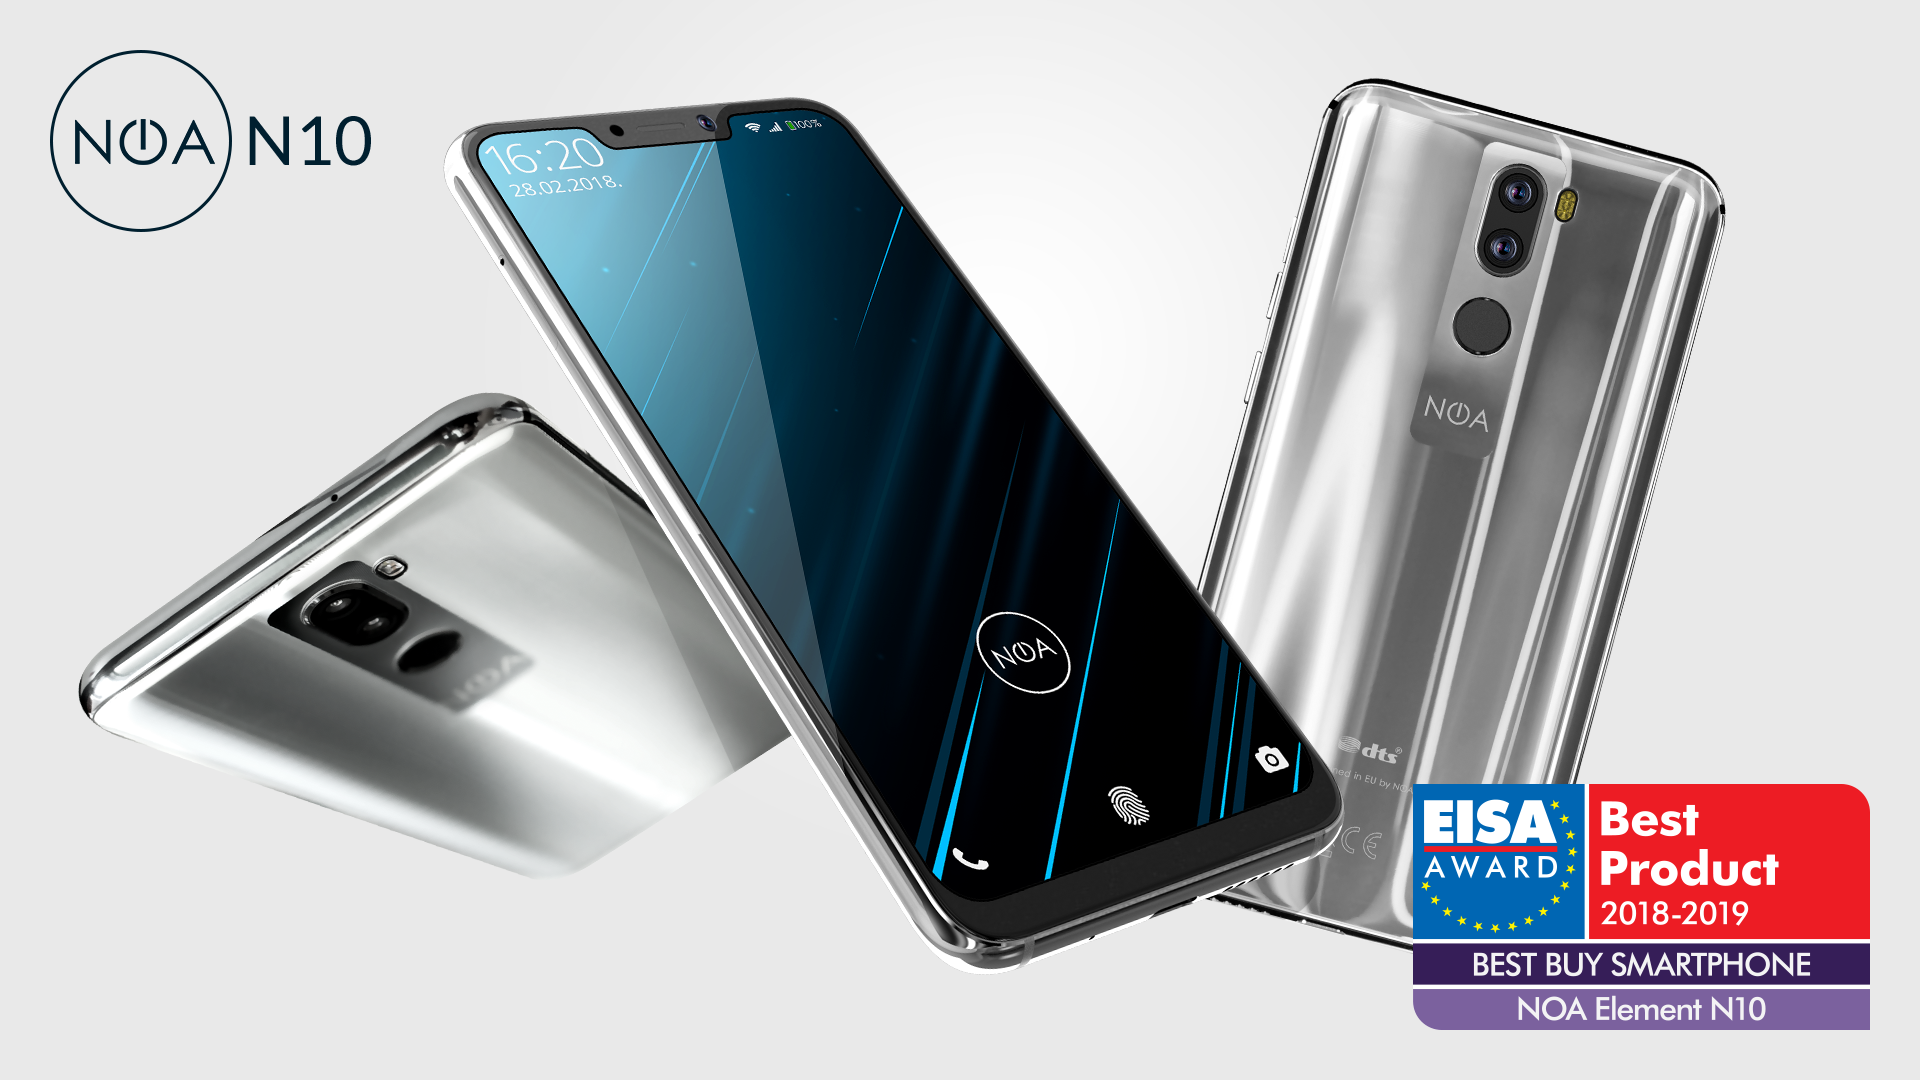 Best Buy Smartphone: Mobitel NOA N10 dobio nagradu EISA